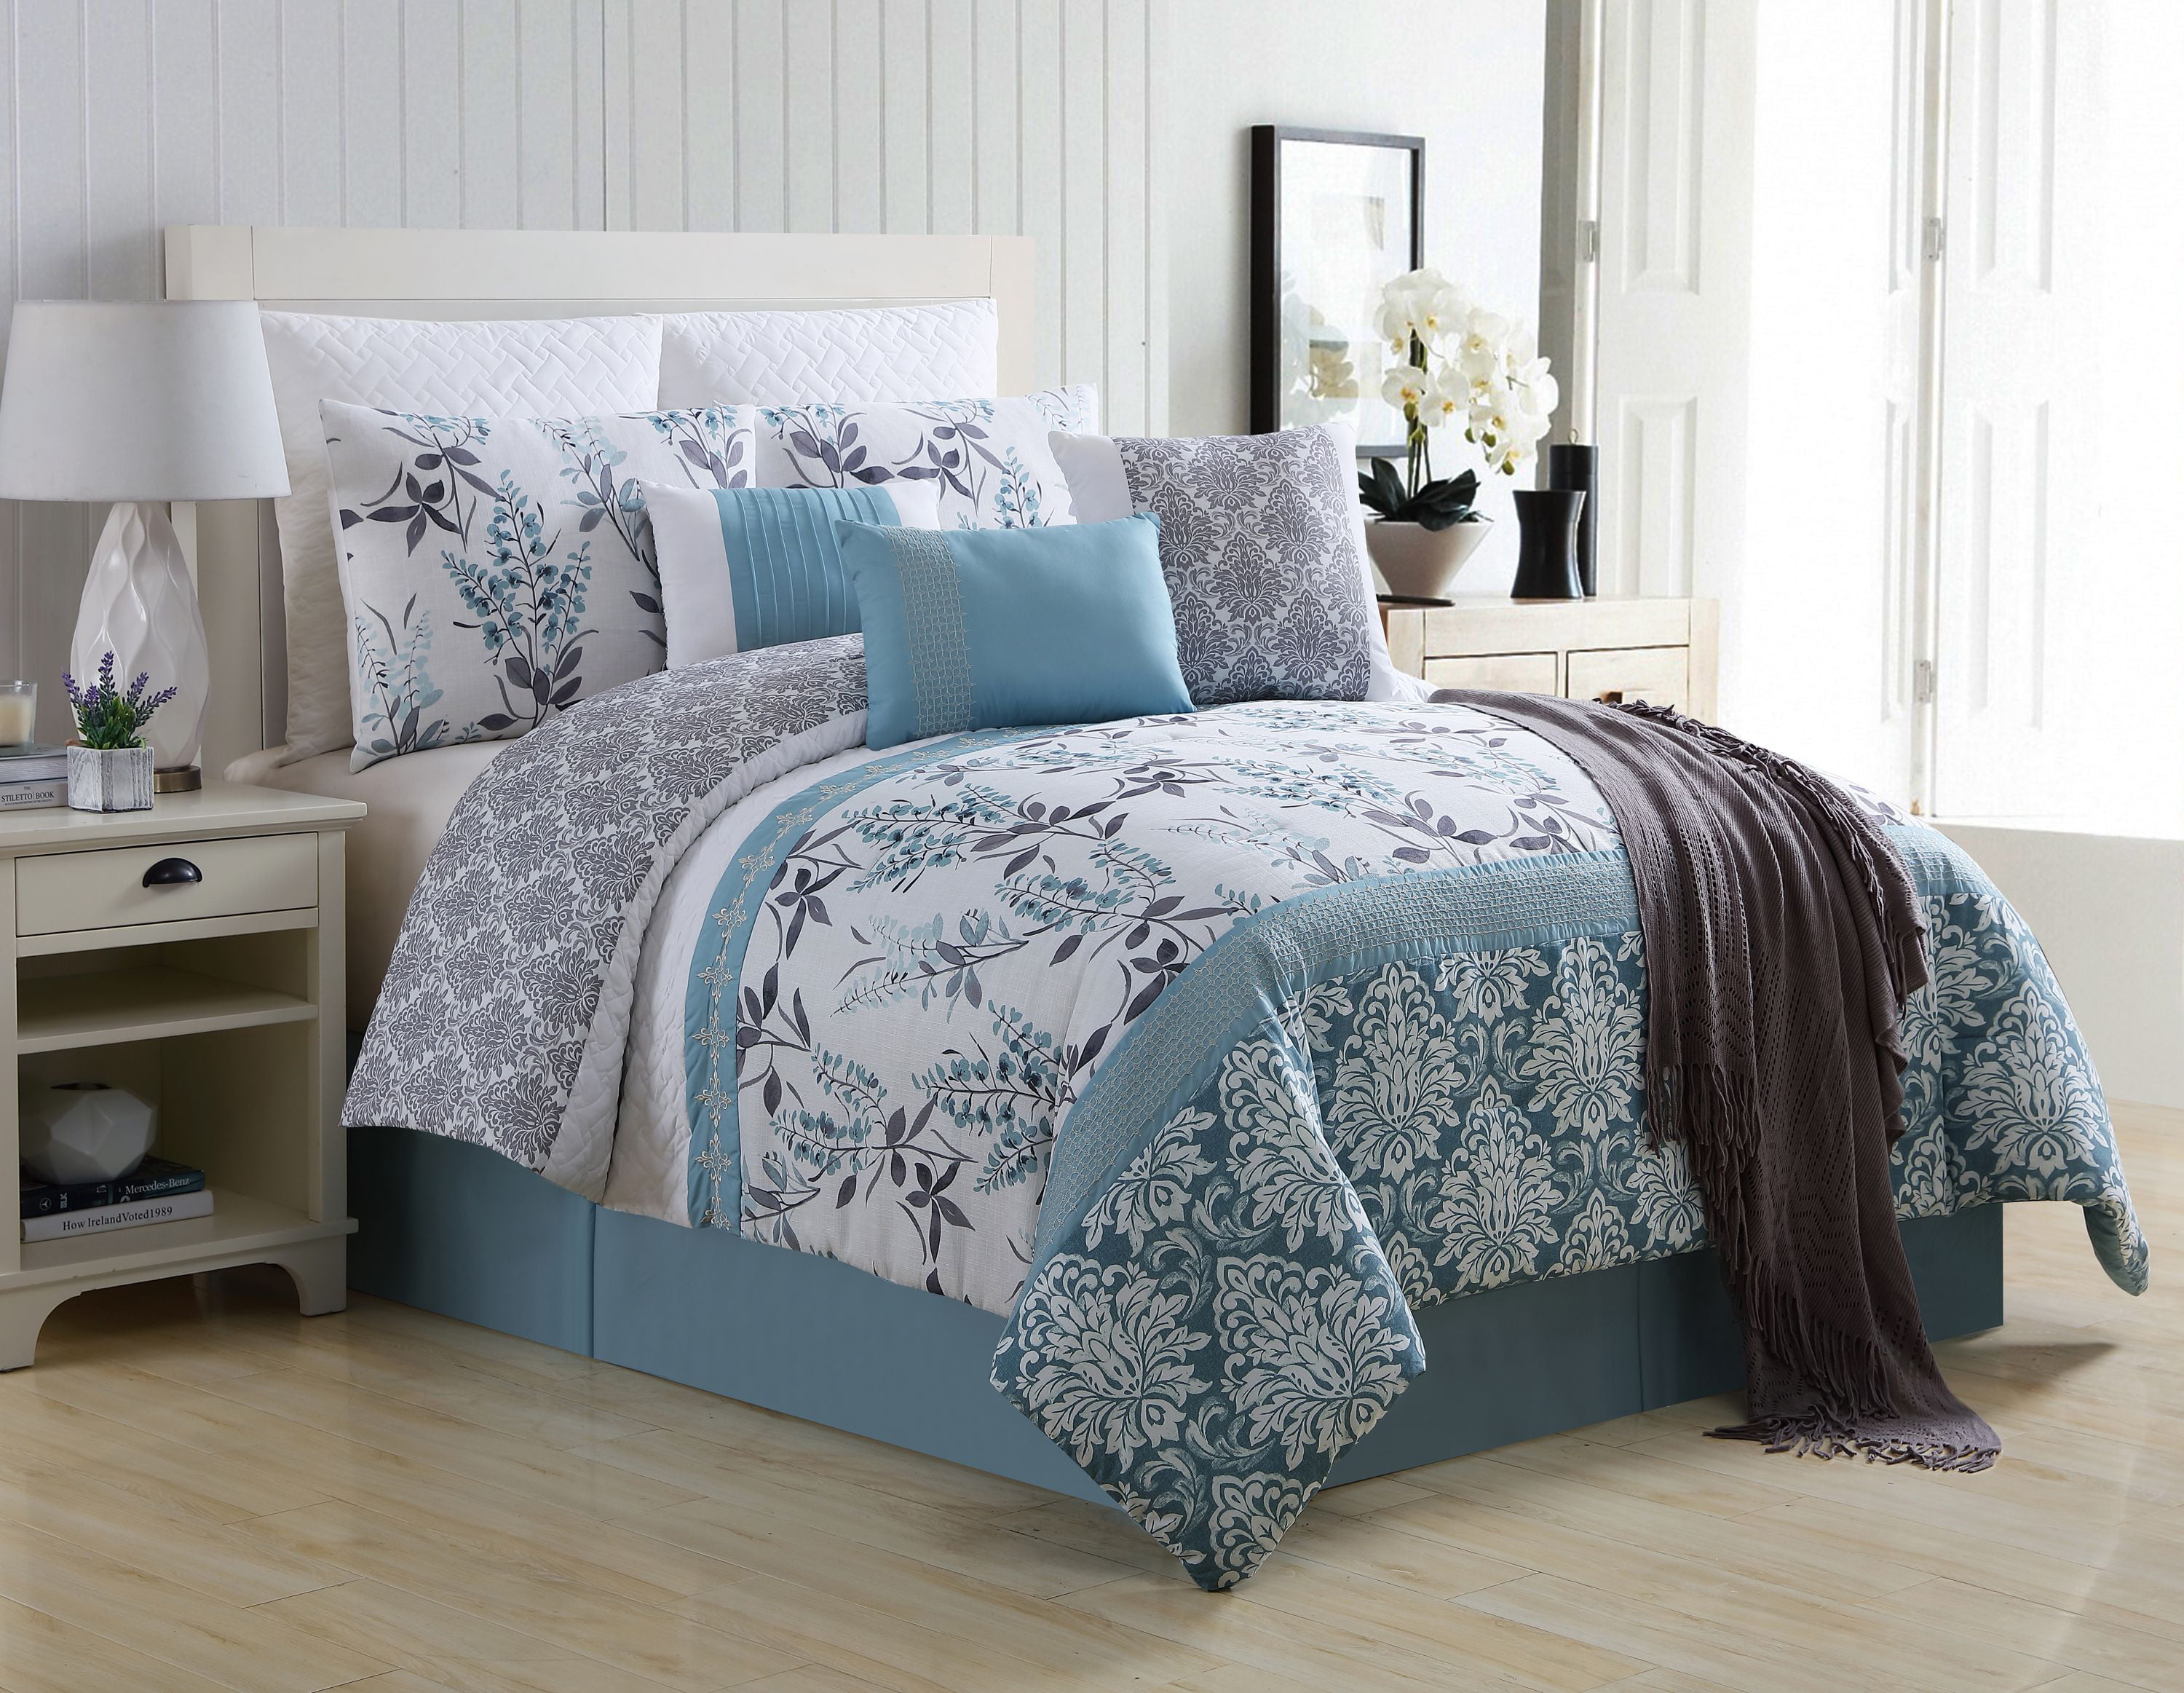 Queen Bedroom Comforter Sets